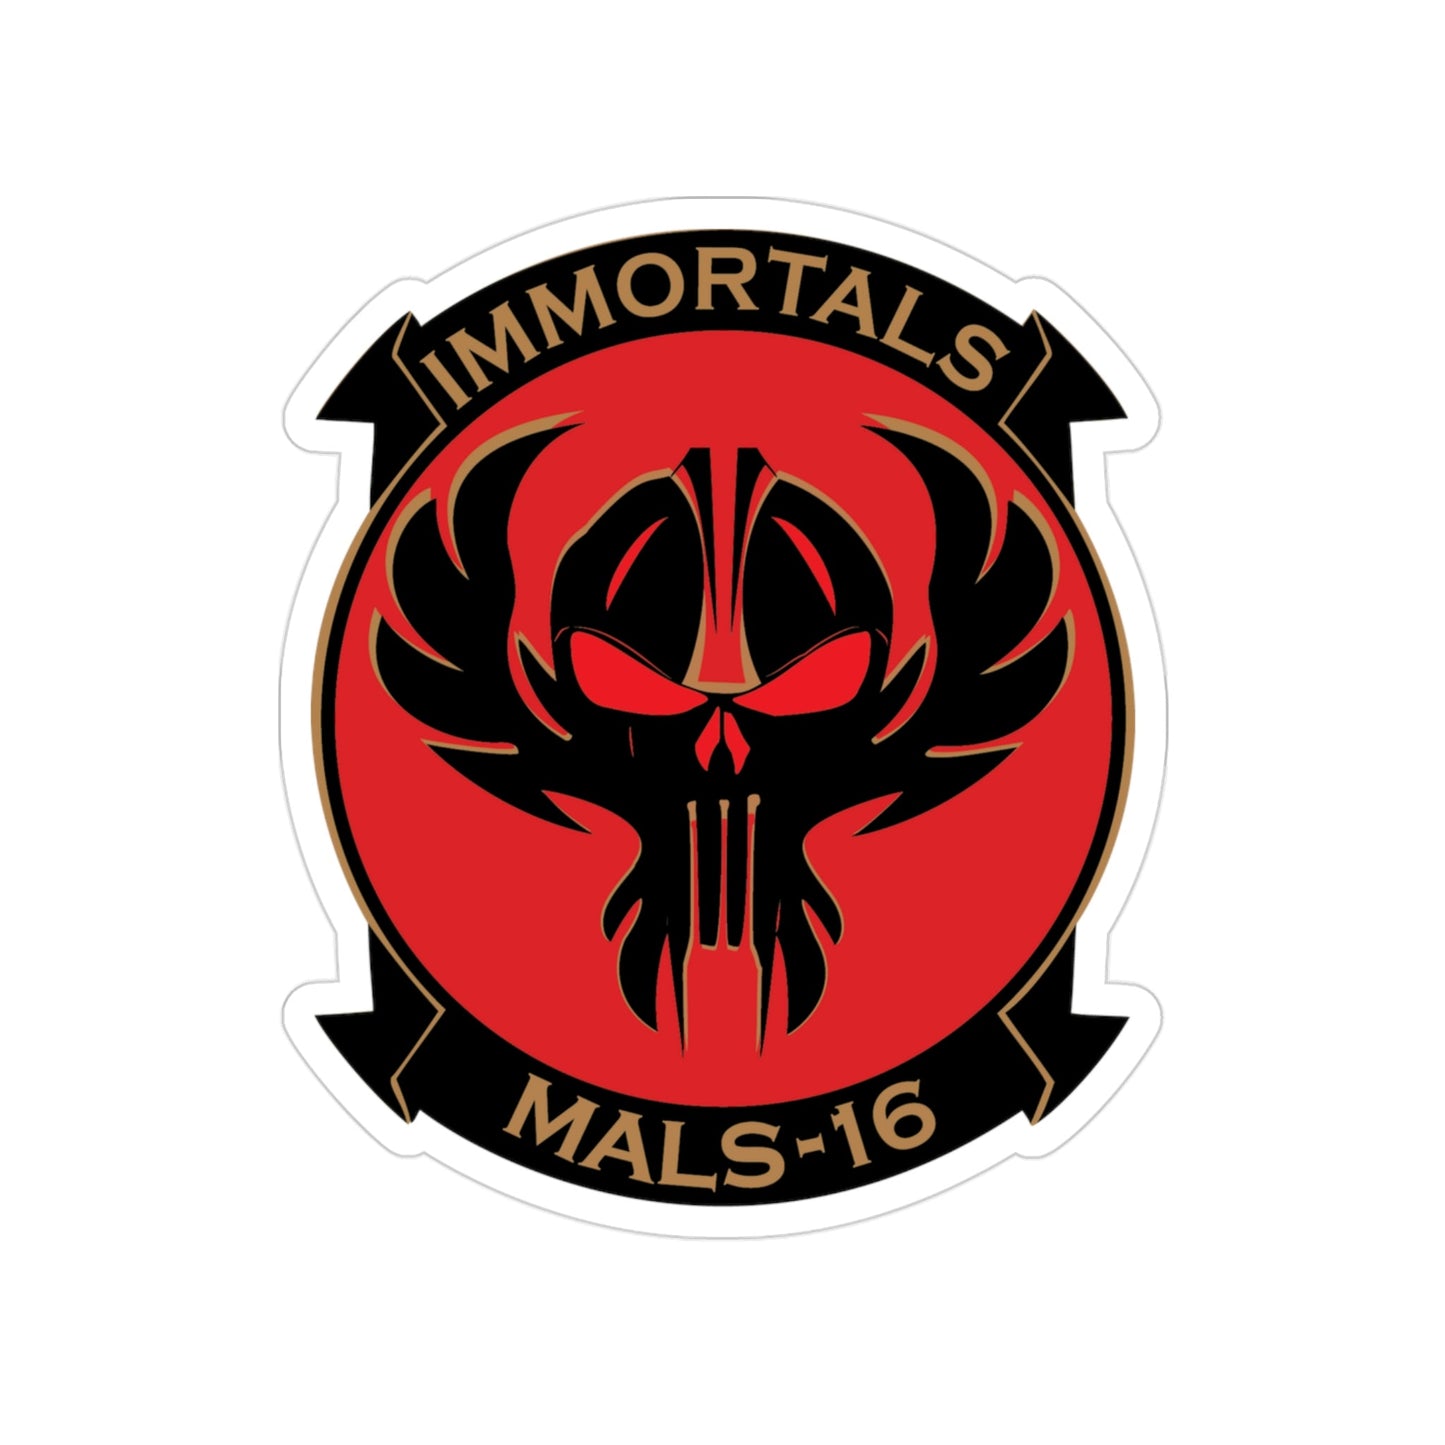 MALS 16 Immortals (USMC) Transparent STICKER Die-Cut Vinyl Decal-3 Inch-The Sticker Space